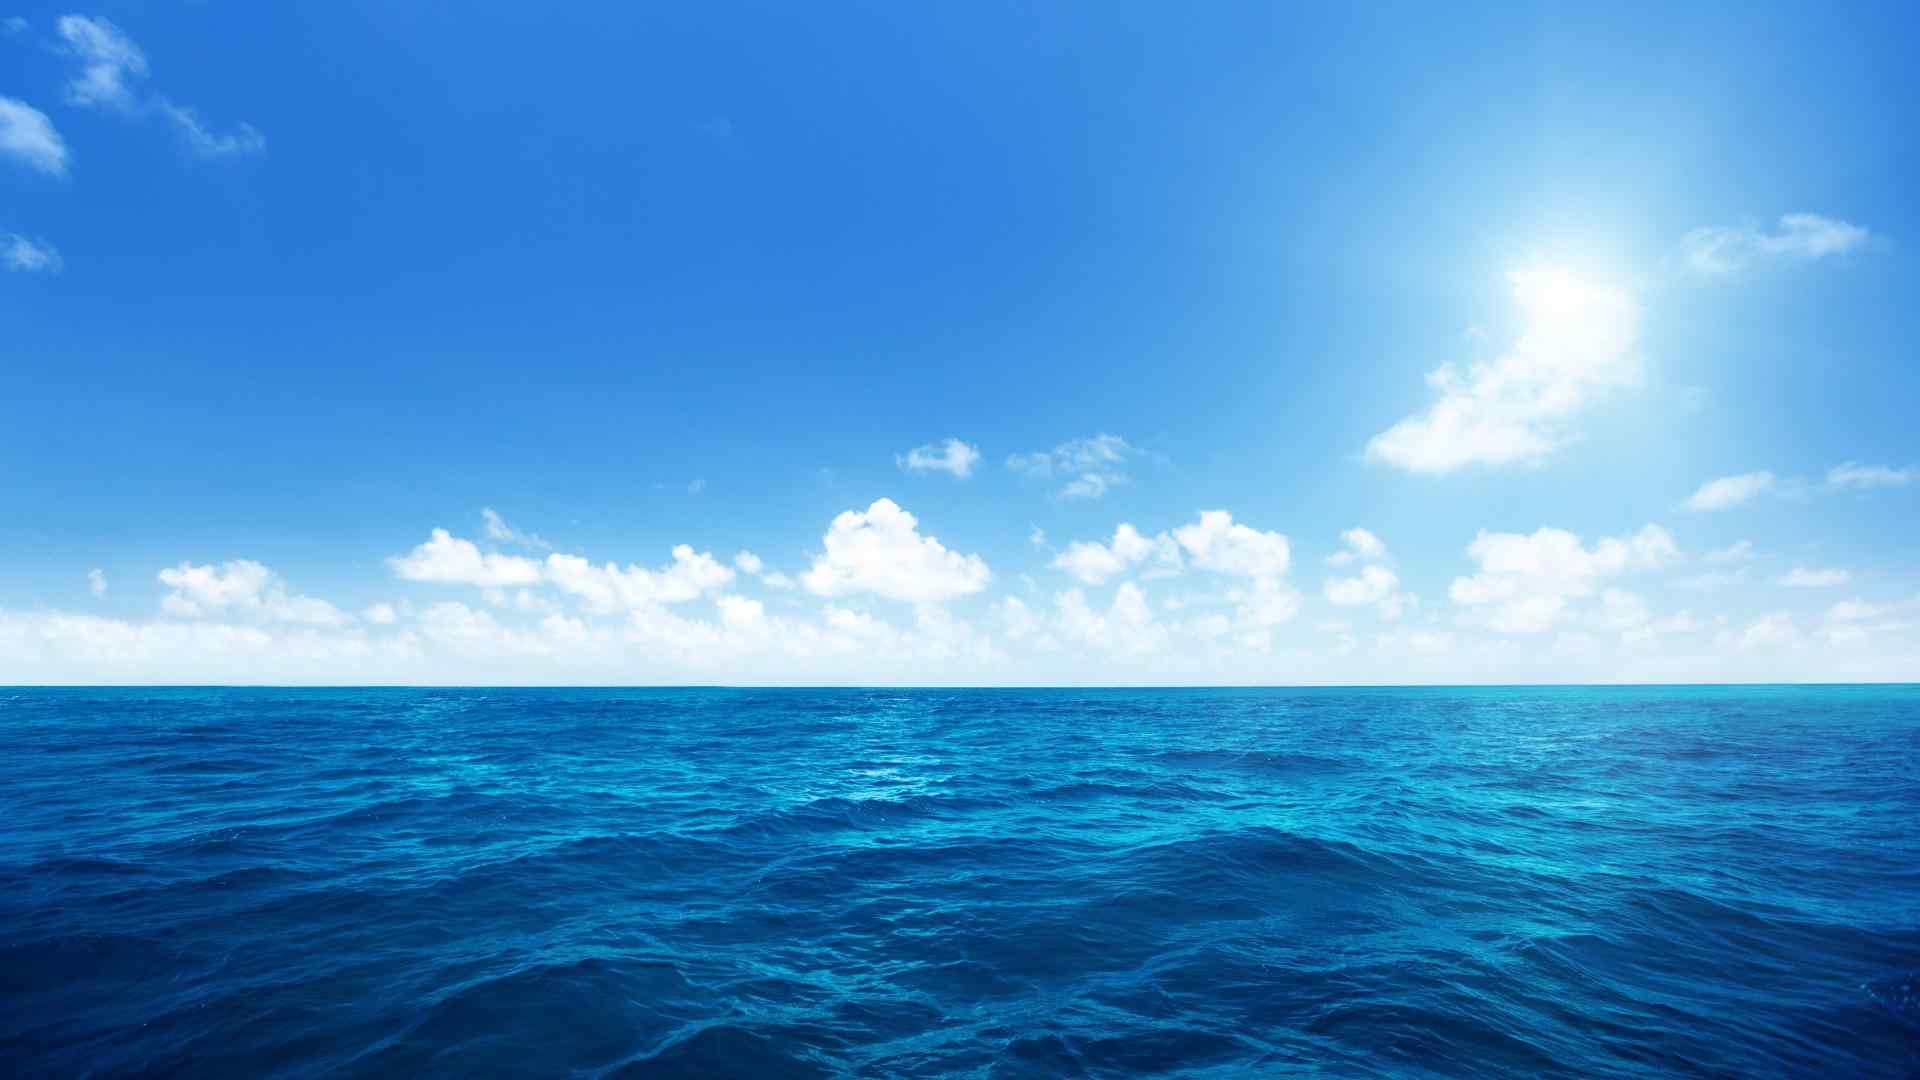 蔚蓝海洋风景图片高清壁纸